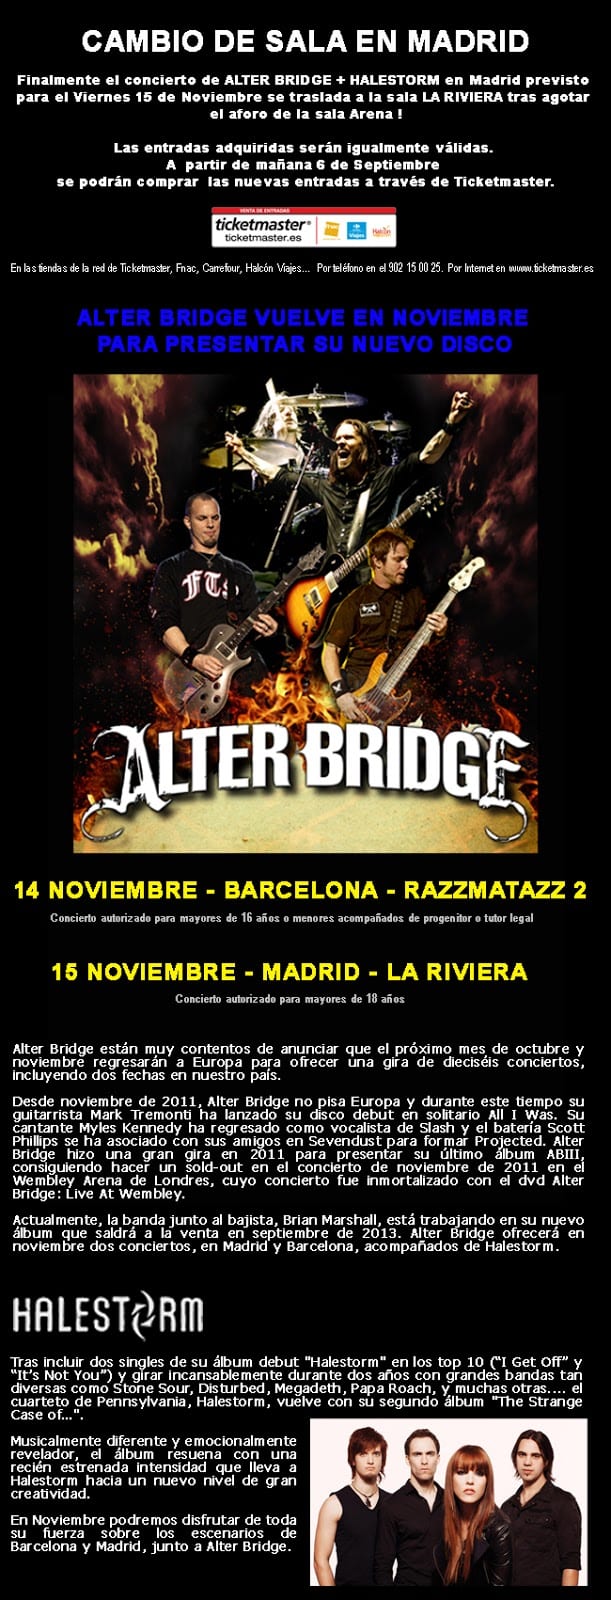 ALTER BRIDGE + HALESTORM : Cambio de sala en Madrid. El concierto será en La Riviera